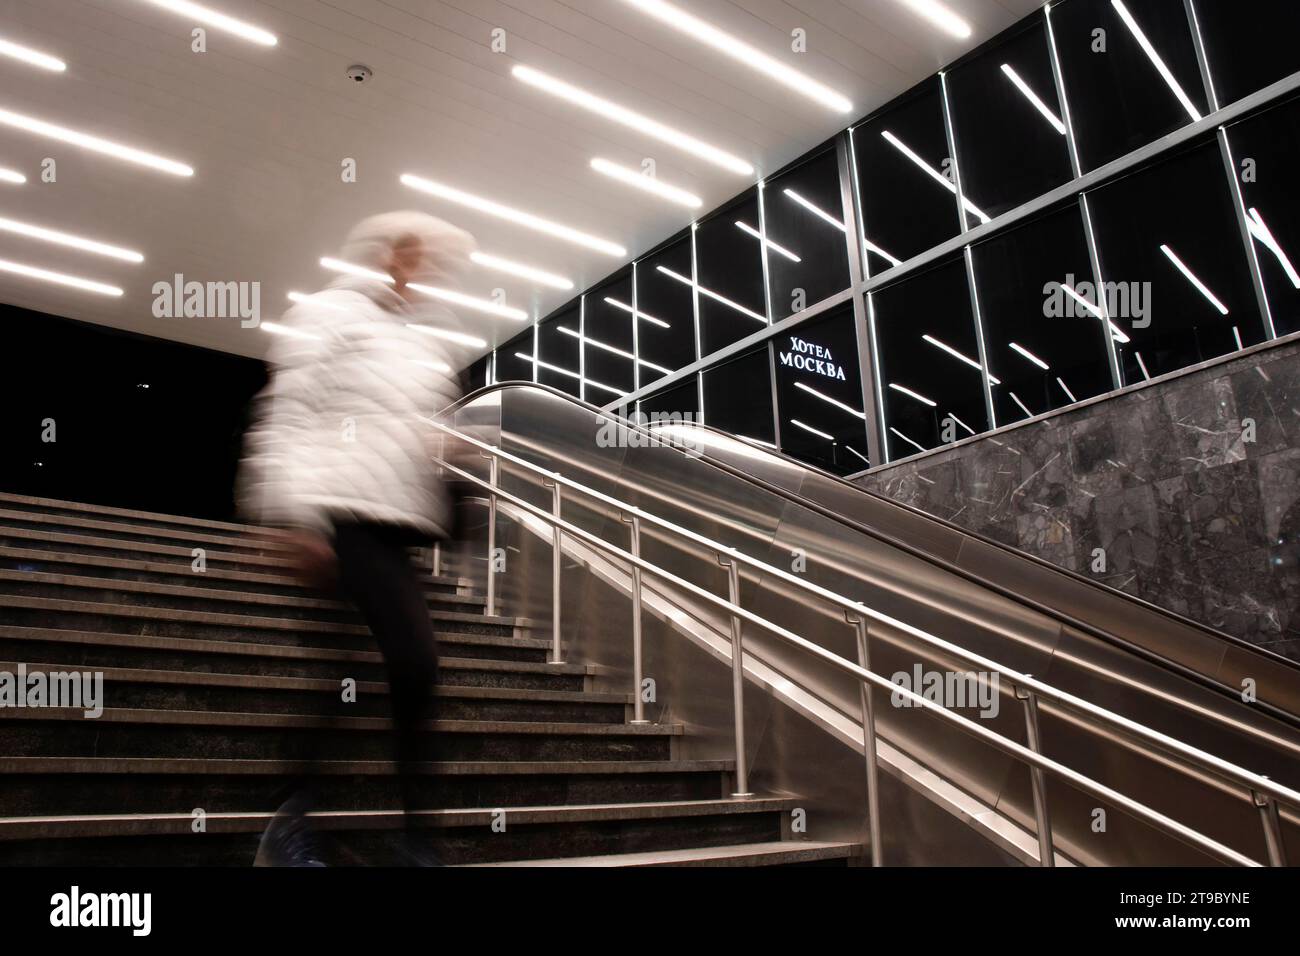 Belgrado, Serbia - 20 novembre 2023: Persona sfocata che scende le scale della metropolitana con riflessi di luci interne e insegna dell'hotel Mosca in cirillico Foto Stock